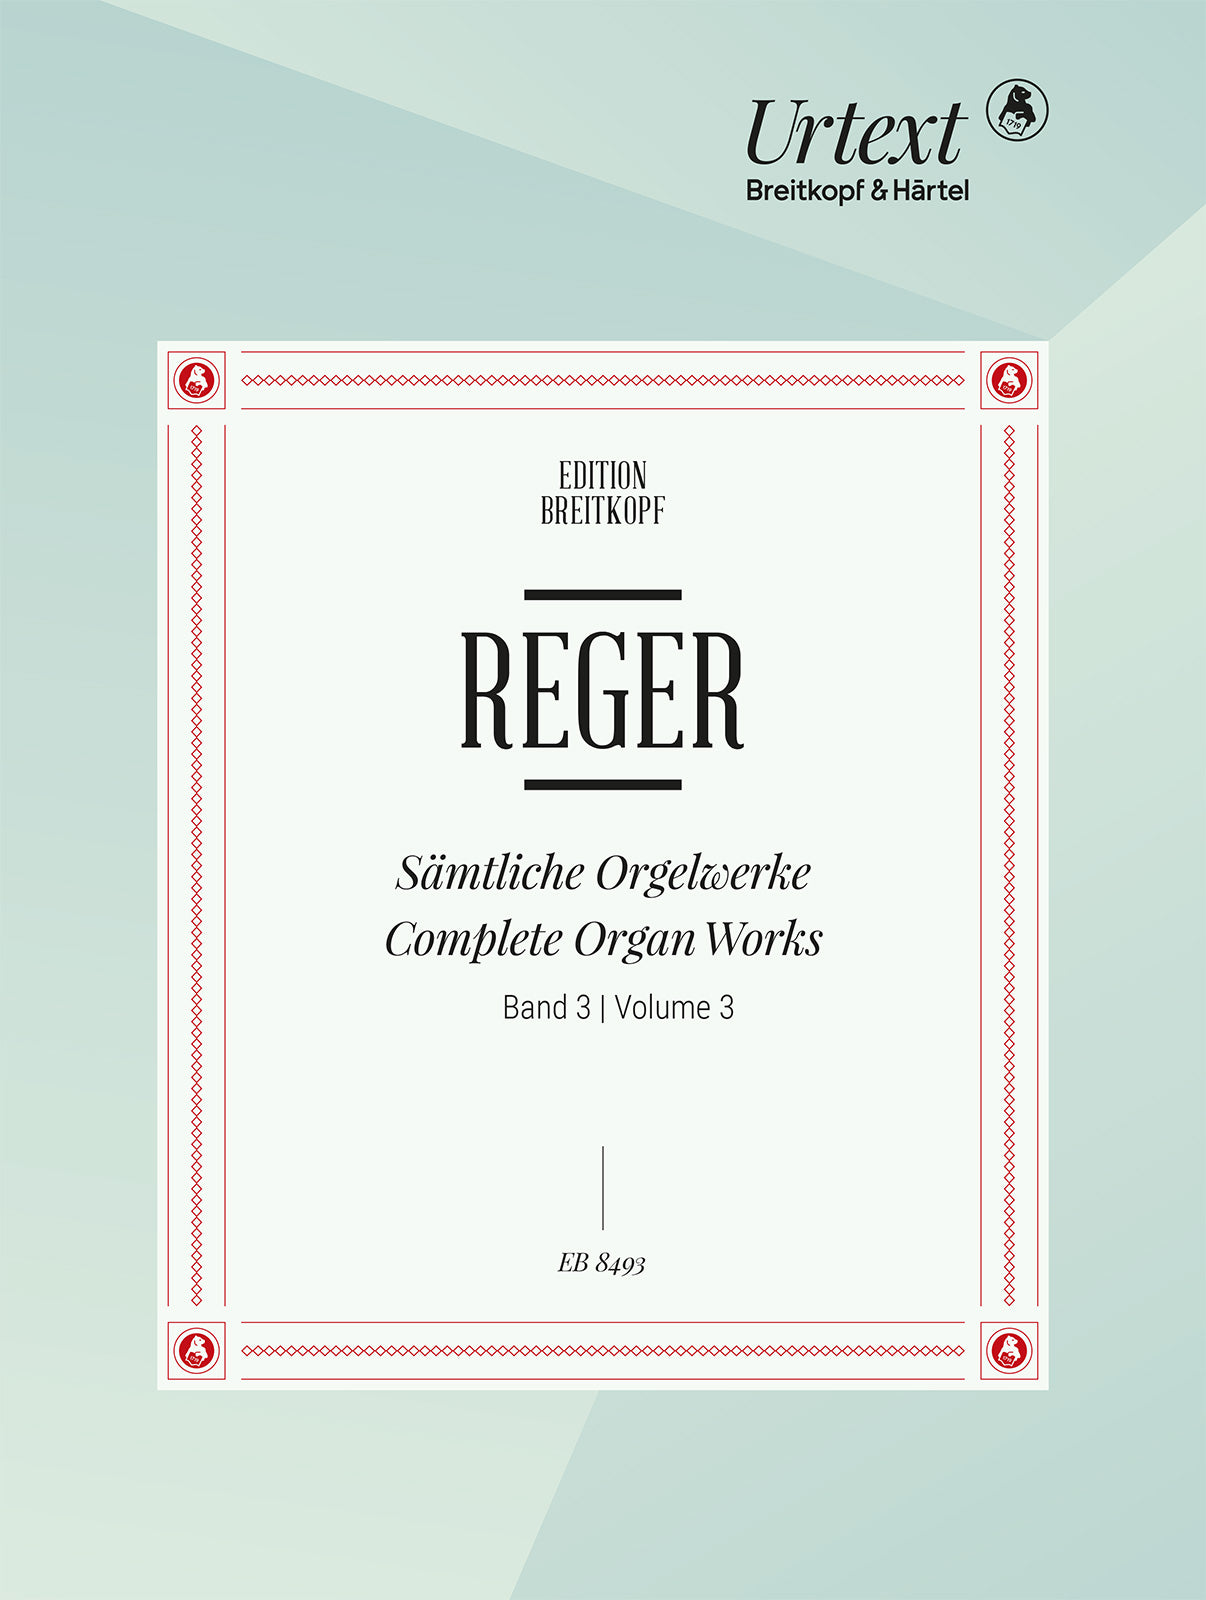 Reger: Free Organ Pieces - Part 1